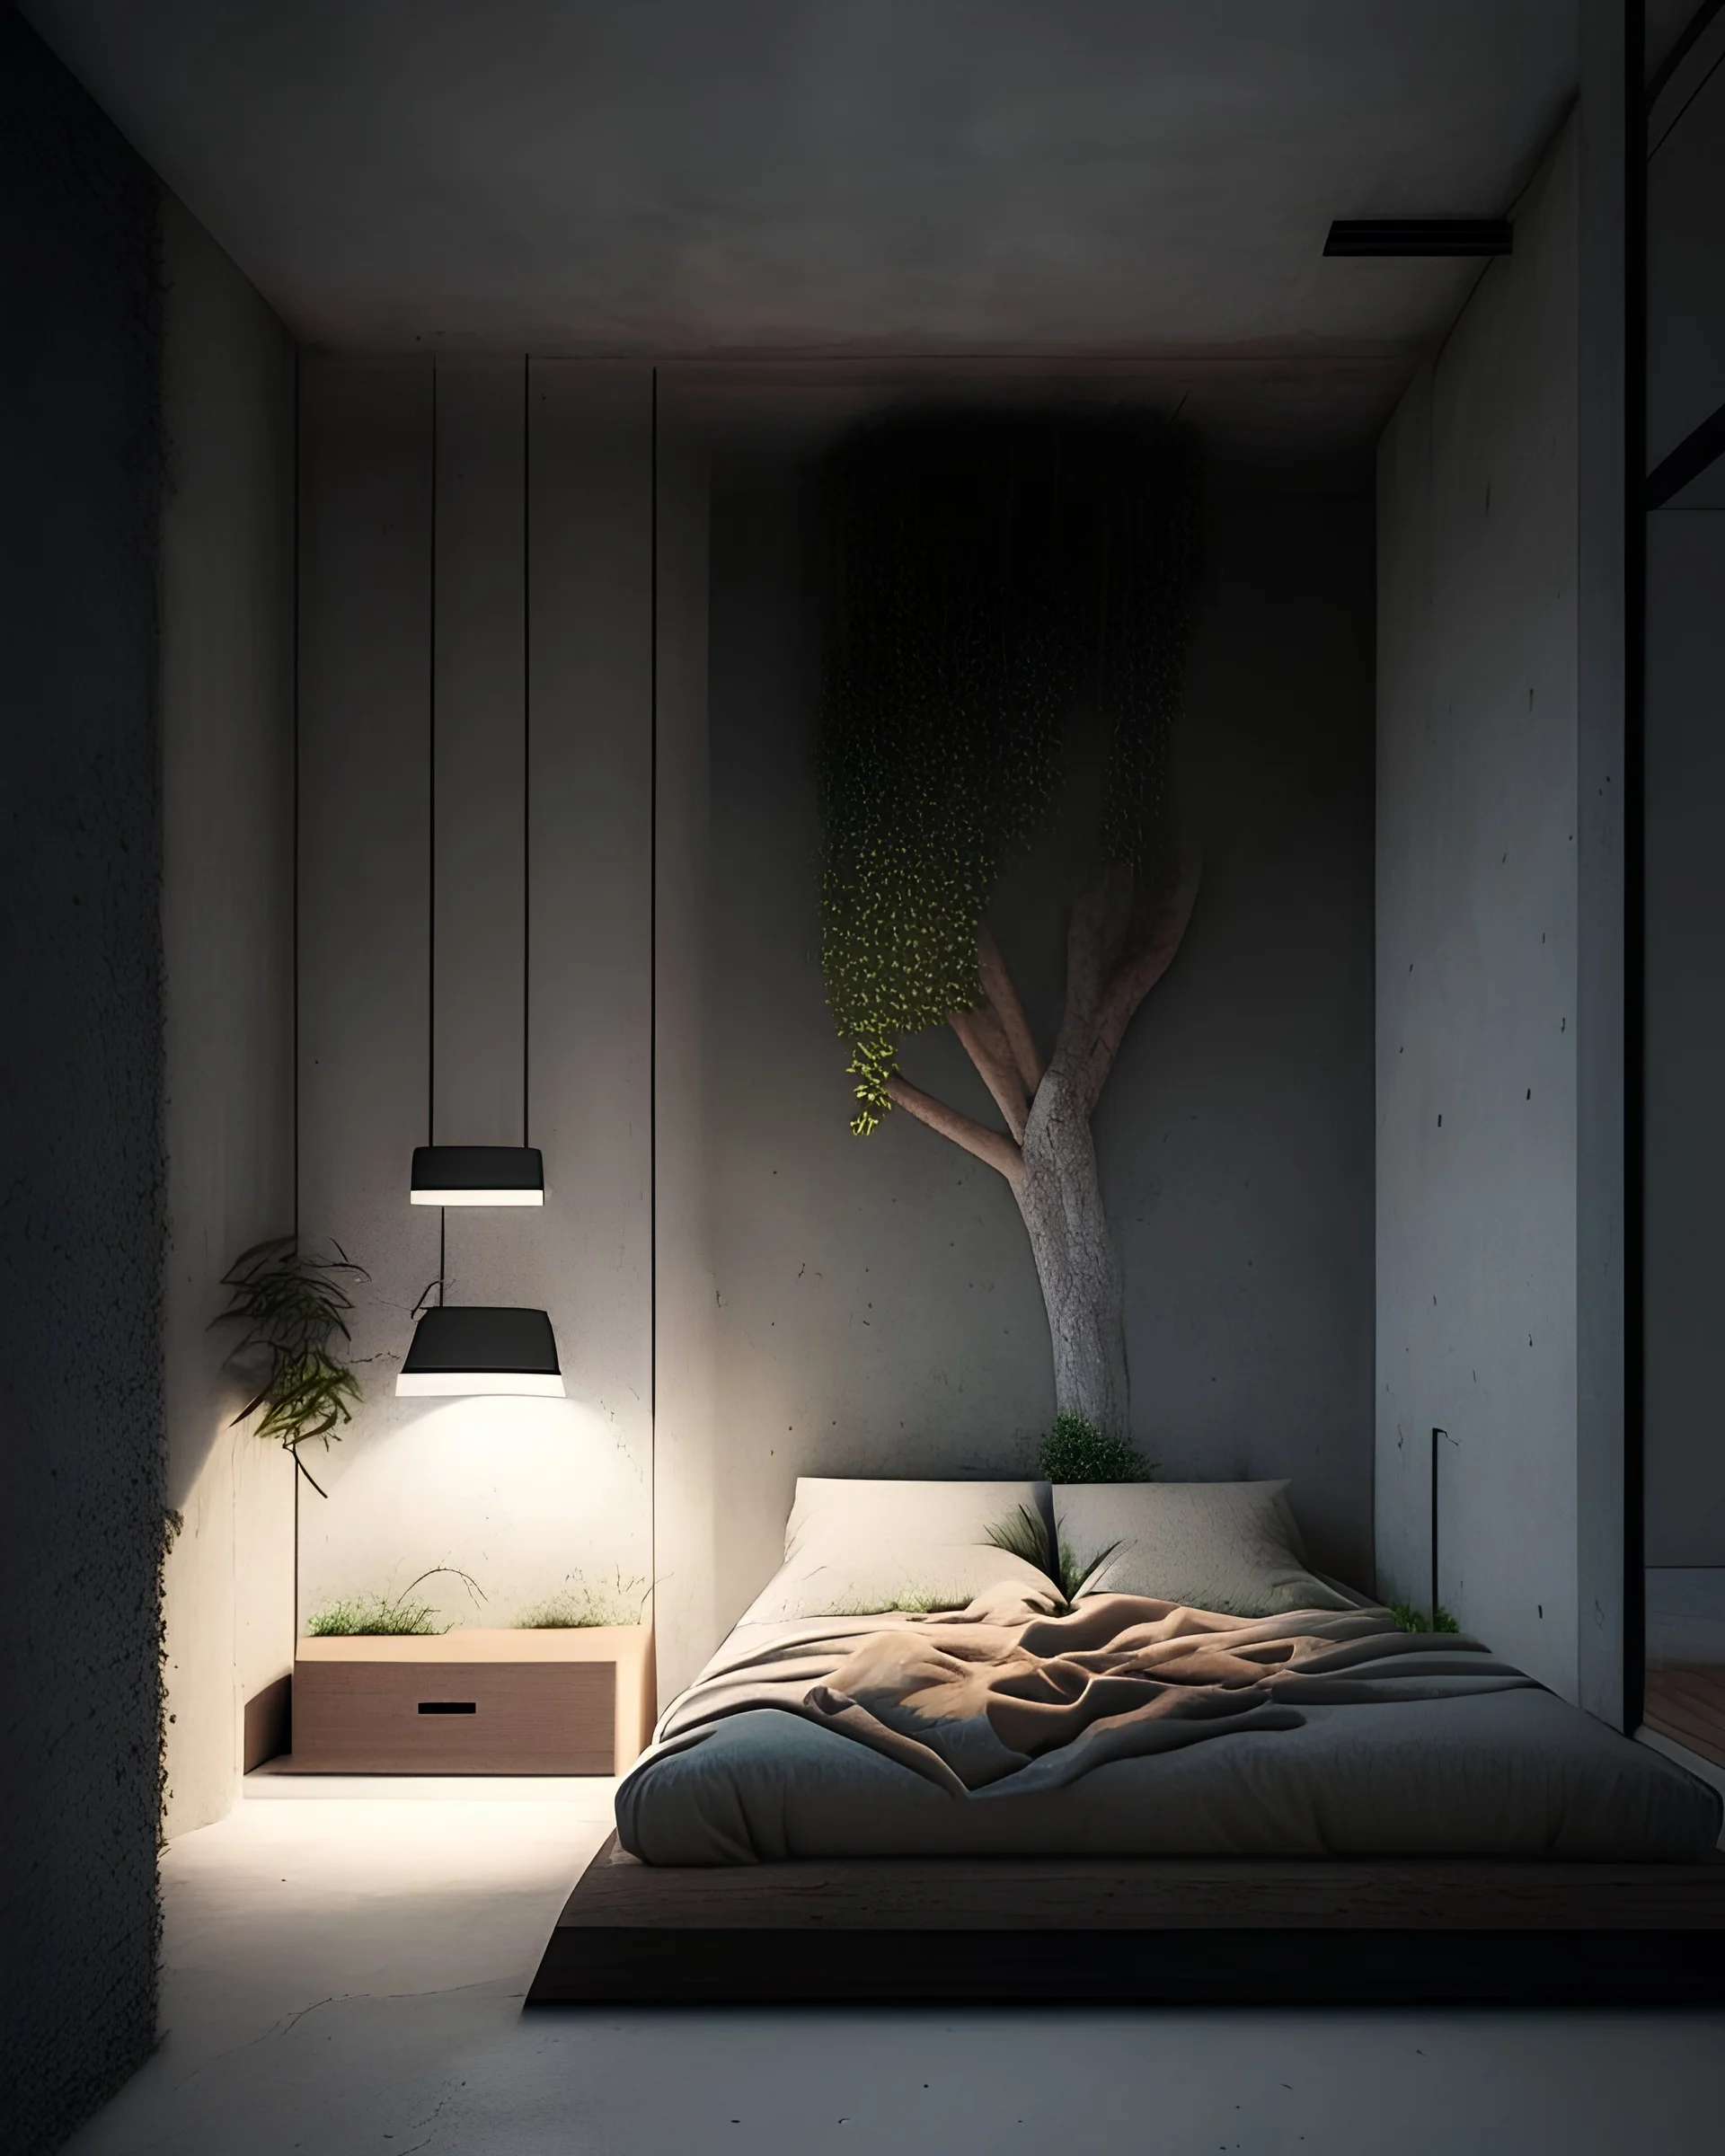 Habitación que sea de estilo minimalista, con materiales de concreto aparente y muebles de madera un poco de vegetación e iluminación led tenue